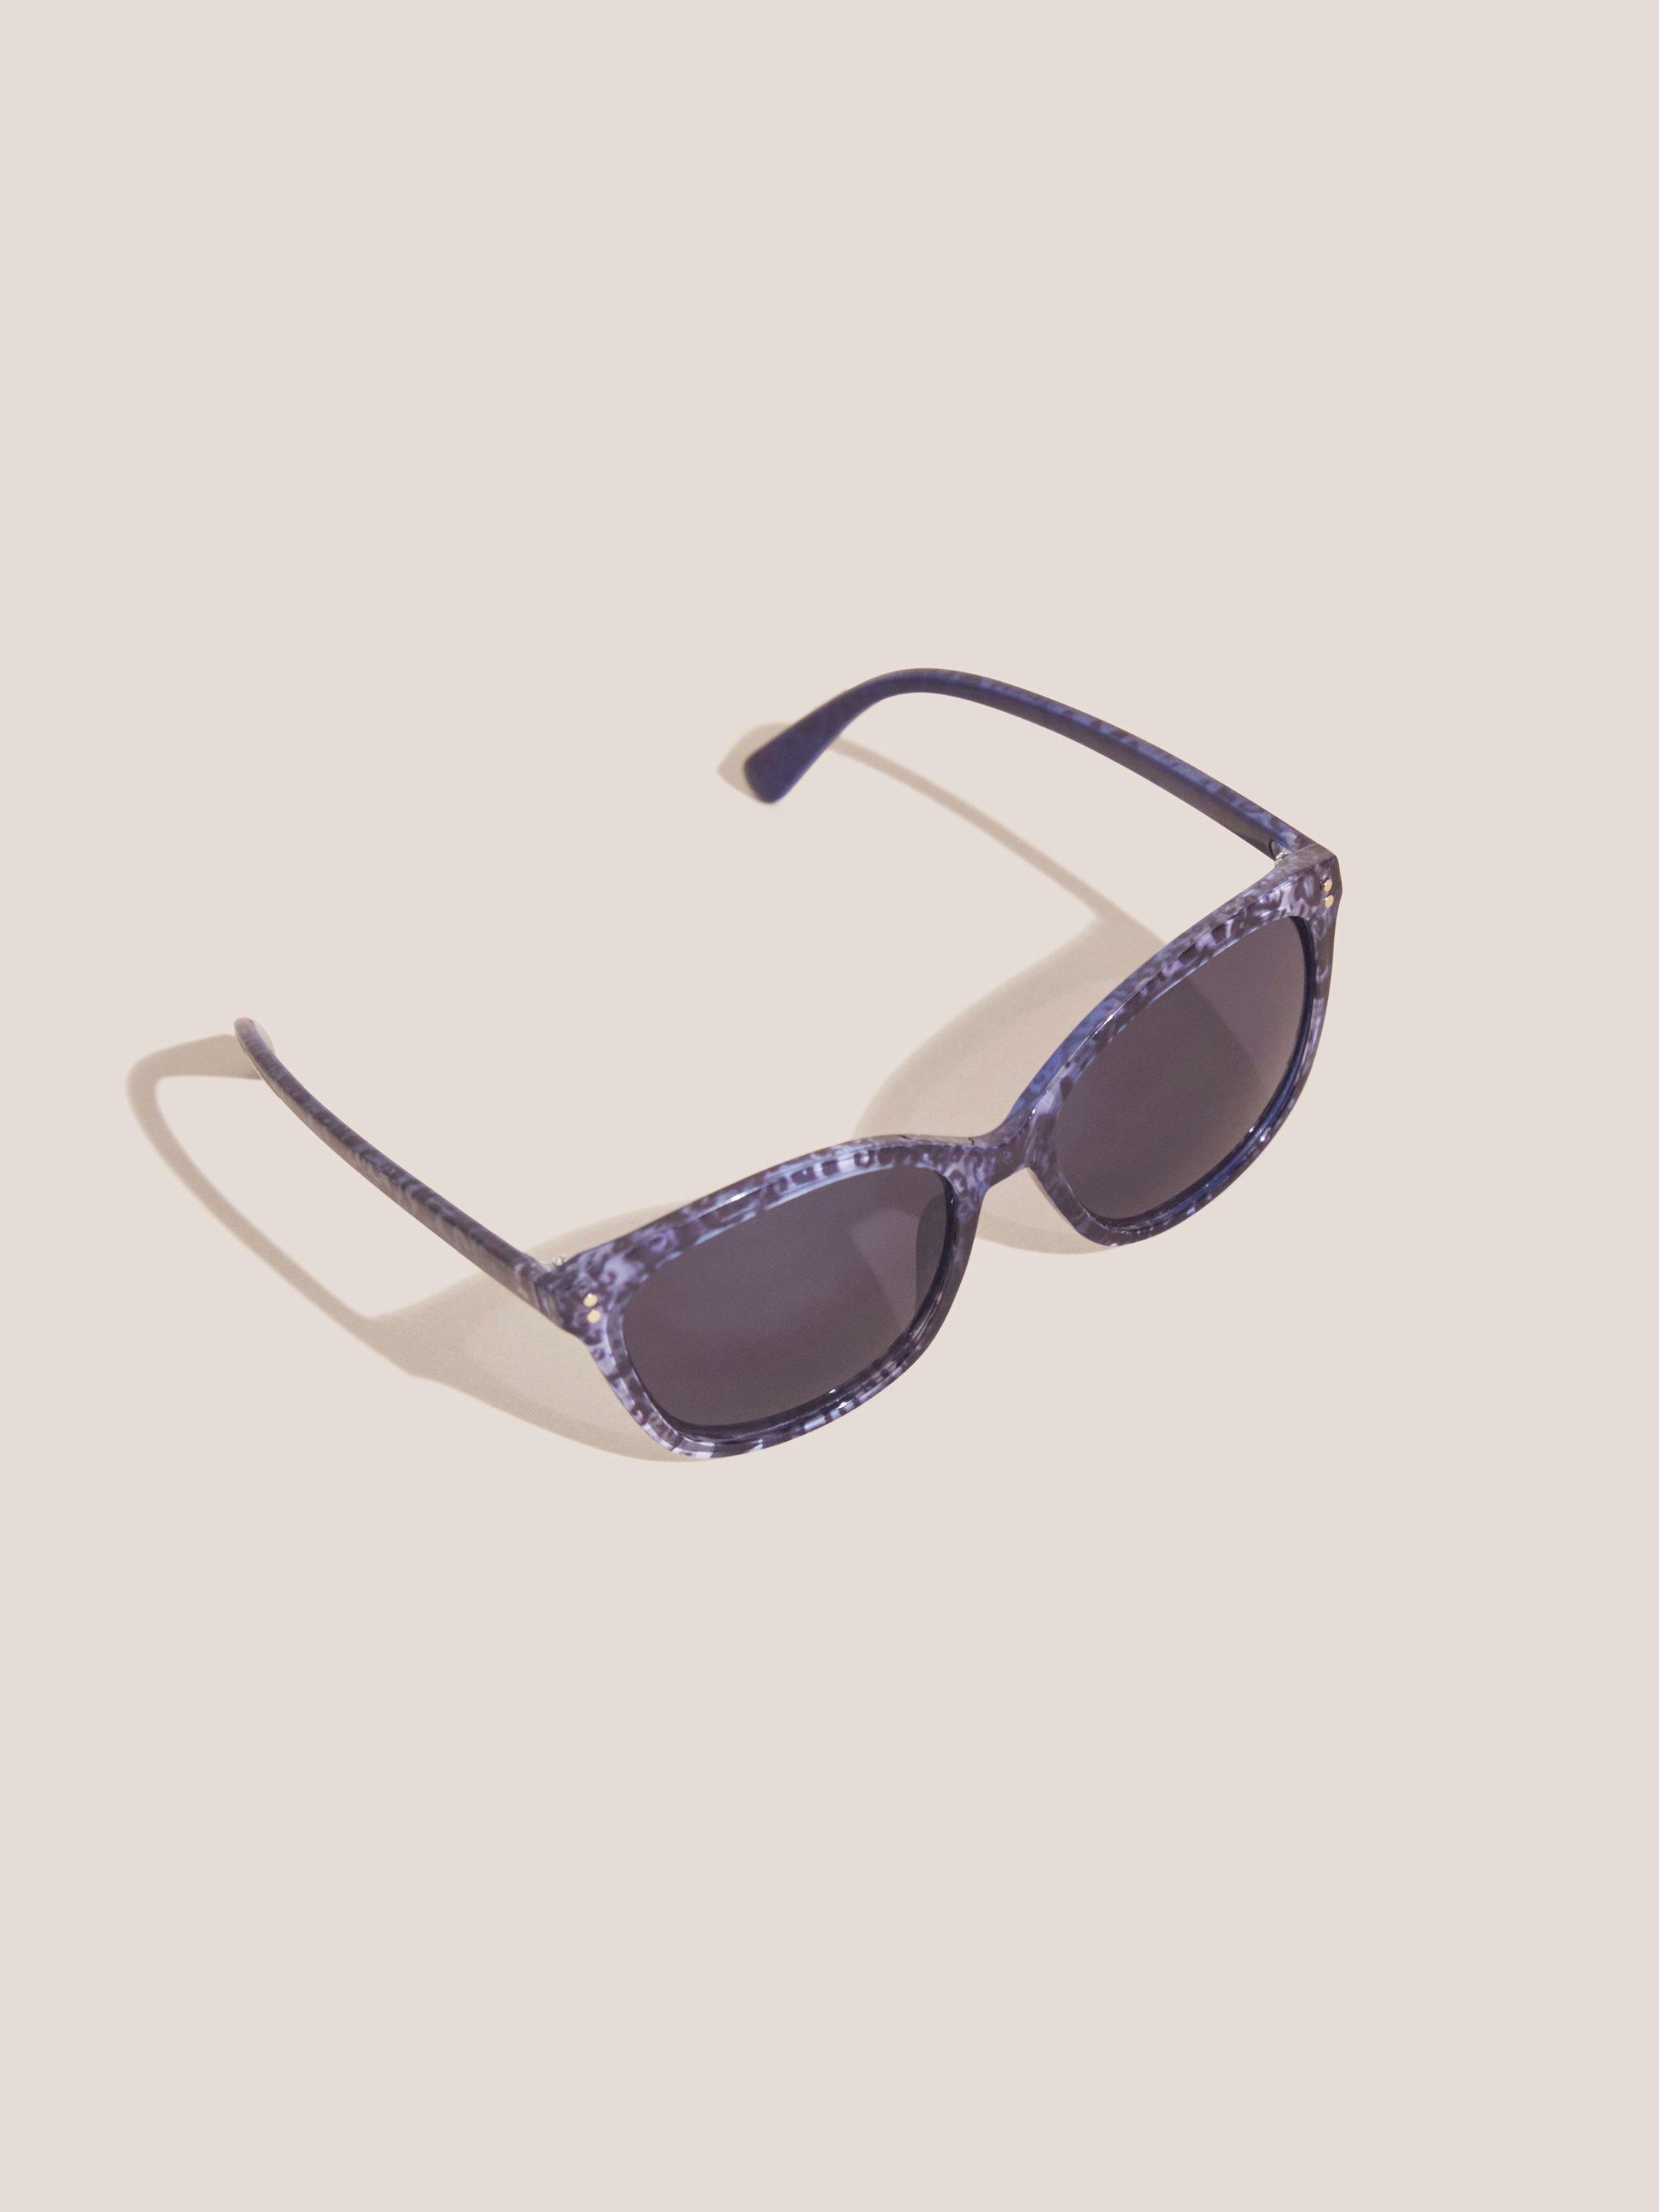 Soft Cateye Sunglasses in DK BLUE - FLAT DETAIL